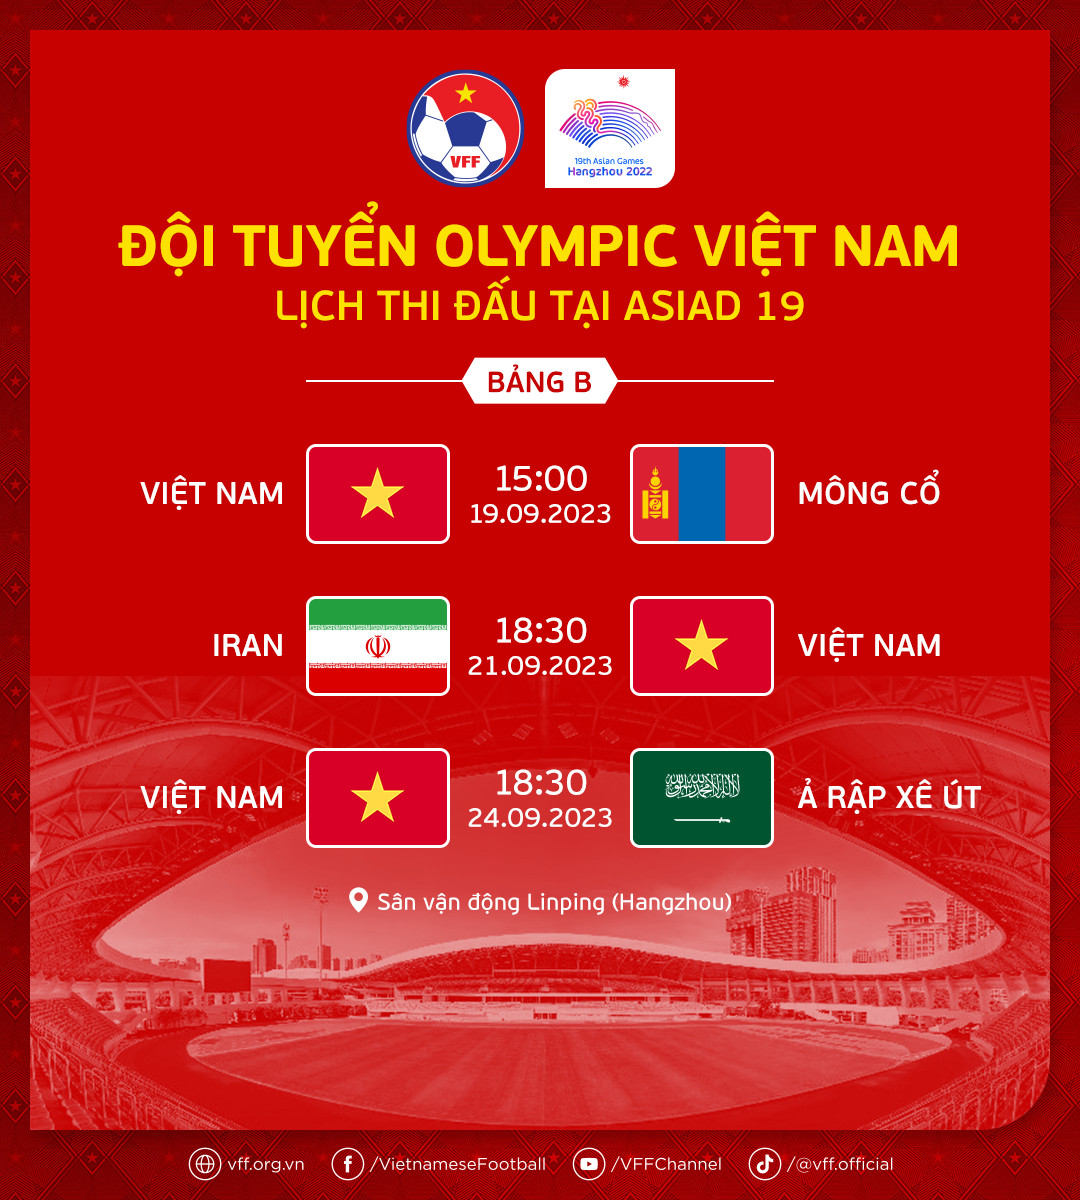 Lịch thi đấu của đội Olympic Việt Nam tại Asiad 19